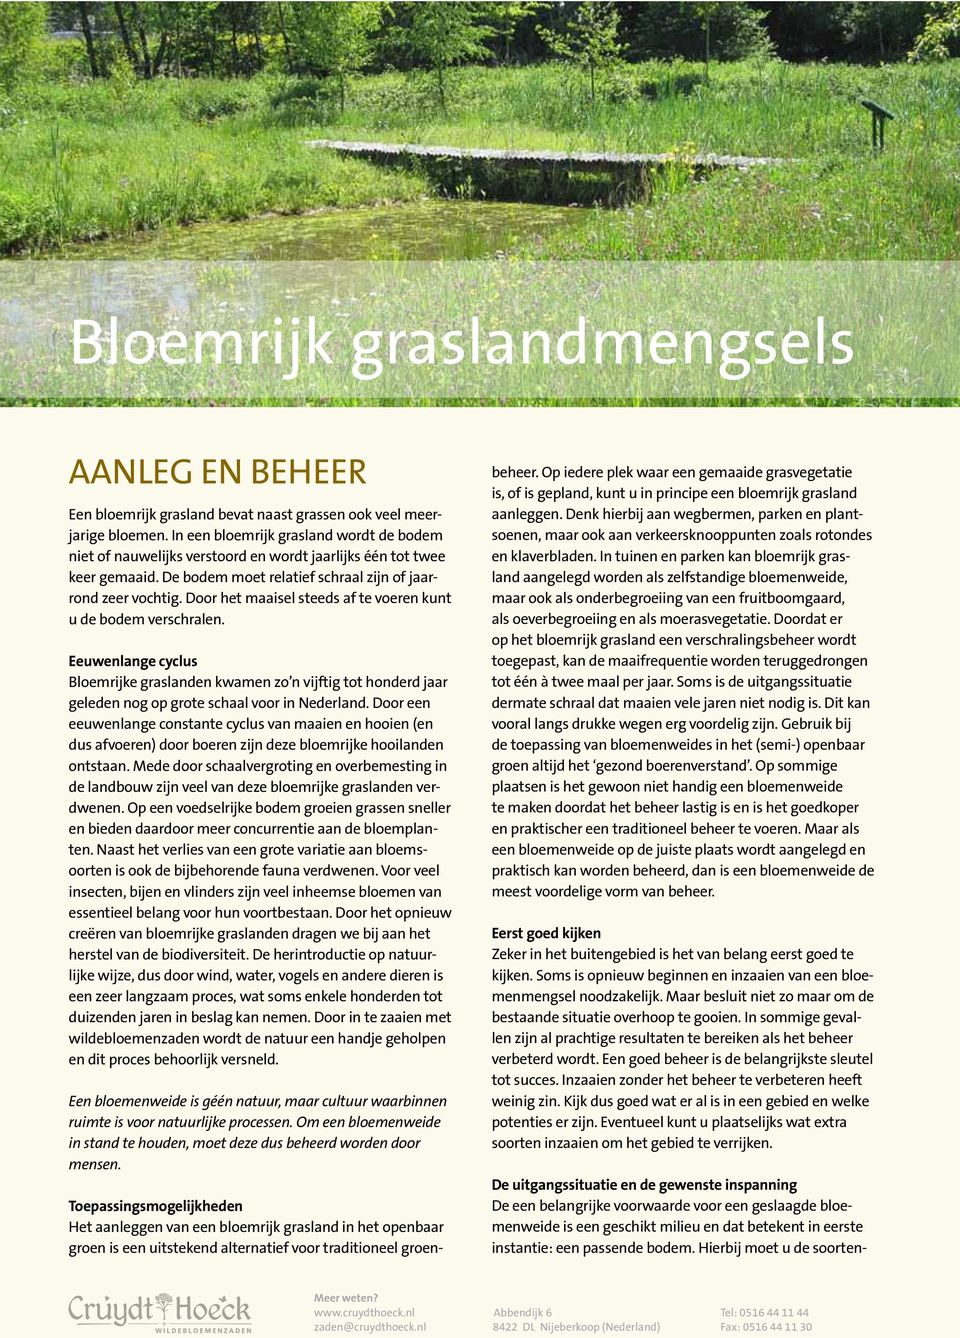 Door het maaisel steeds af te voeren kunt u de bodem verschralen. Eeuwenlange cyclus Bloemrijke graslanden kwamen zo n vijftig tot honderd jaar geleden nog op grote schaal voor in Nederland.